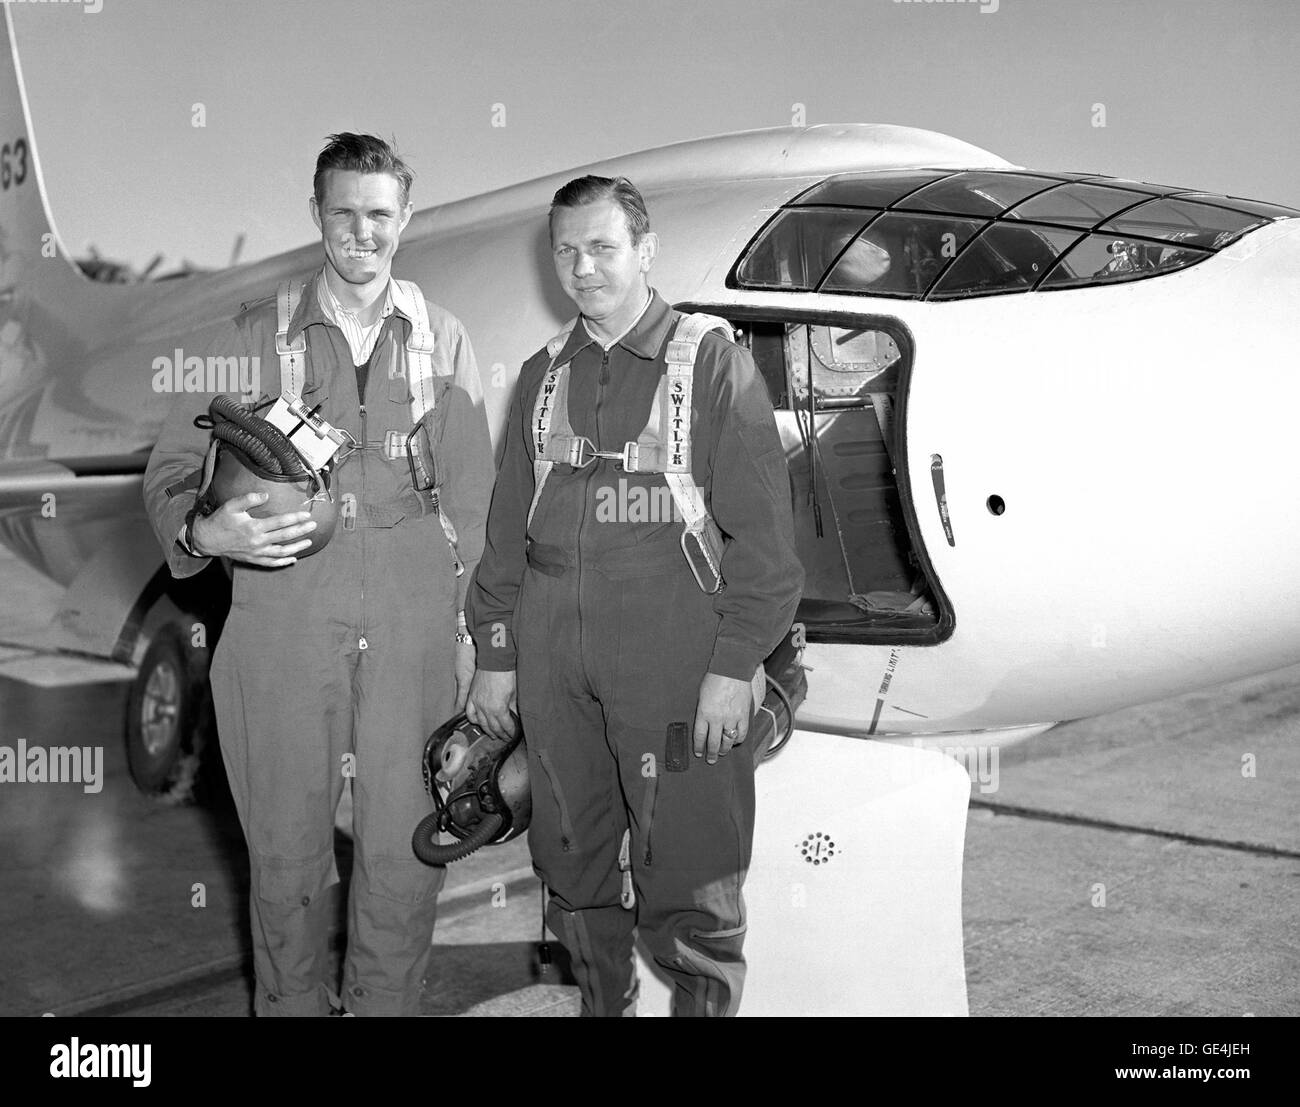 (1 de septiembre de 1949) La Bell aircraft corporation X-1-2 NACA y dos de los pilotos que volaron los aviones. La de la izquierda es Robert Champine con otro ser Herbert Hoover. La X-1-2 también fue equipado con el 10 por ciento de ala y cola de 8 por ciento, impulsado con un motor de cohete de XLR-11 y aviones realizó su primer vuelo el 9 de diciembre de 1946 con la Chalmers Goodlin "Slick" en los controles. Como con el X X-1-1-1-2 continuó investigando transonic/régimen de vuelo supersónico. Piloto de la NACA Herbert Hoover se convirtió en el primer civil en volar Mach 1, 10 de marzo de 1948. X-1-2 voló unti Foto de stock